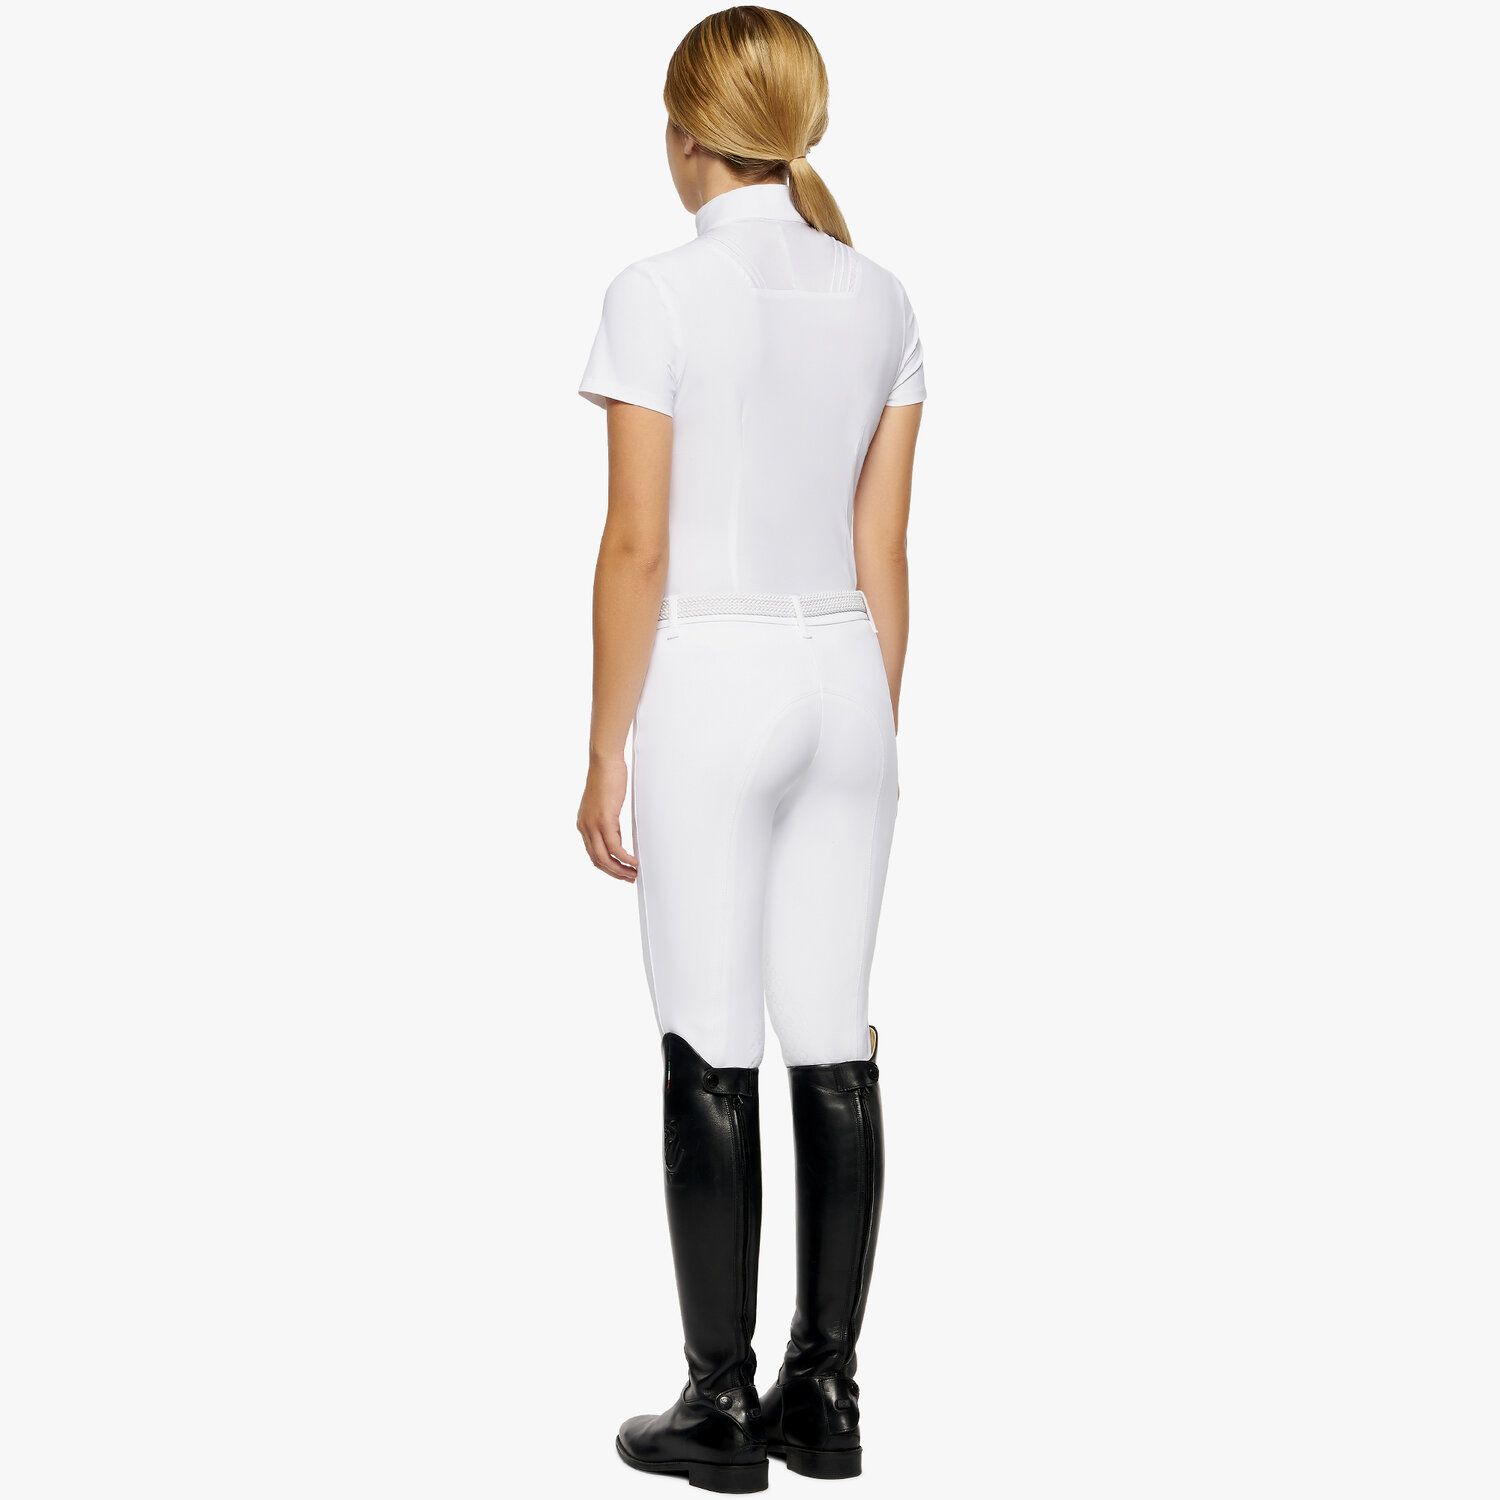 Cavalleria Toscana Girl's short-sleeved shirt WHITE-3